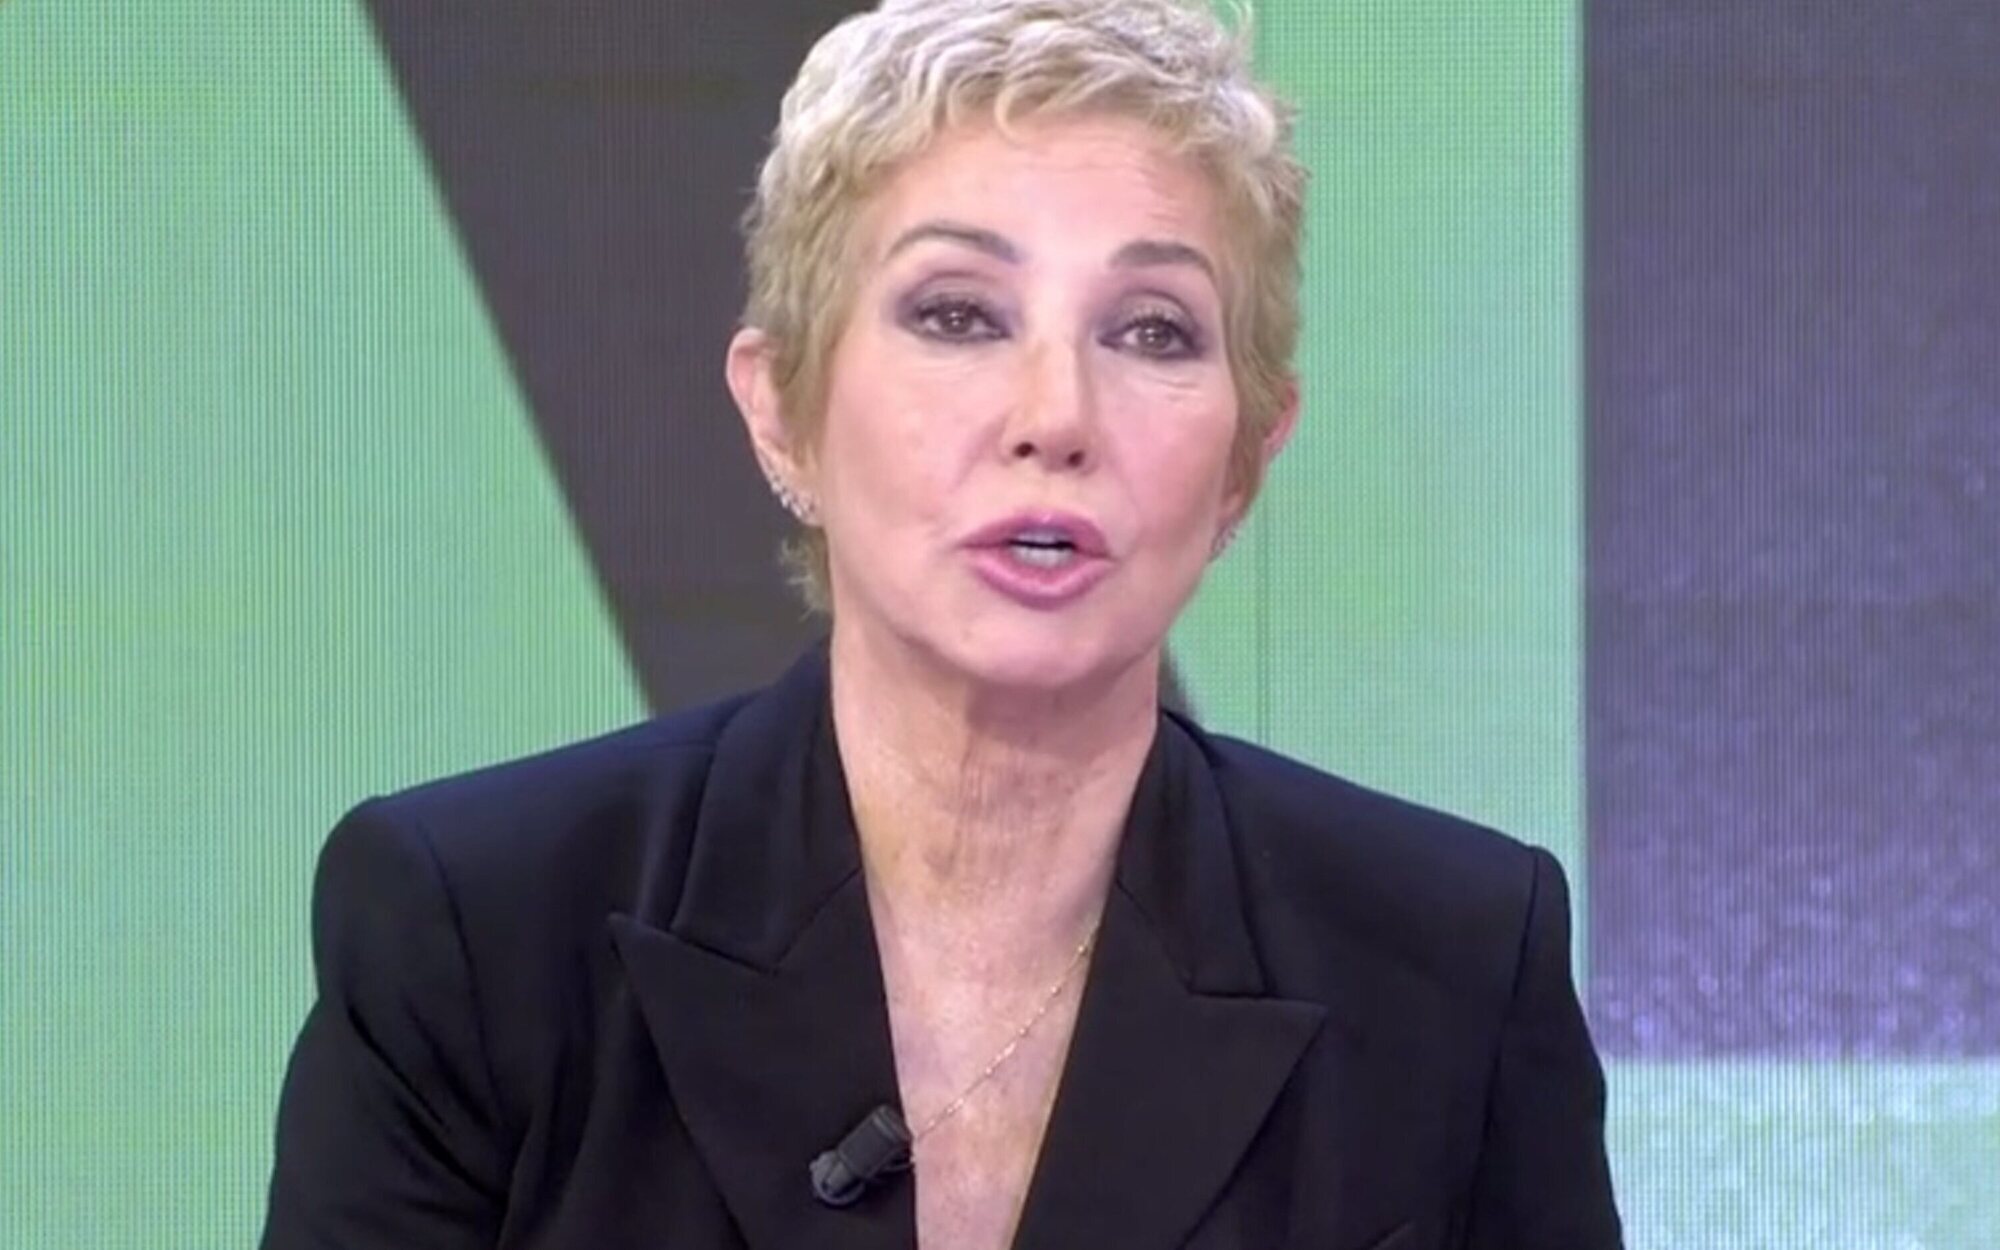 El frío deseo de Ana Rosa Quintana a Sonsoles Ónega por su marcha a Antena 3: "Espero que le vaya muy bien"